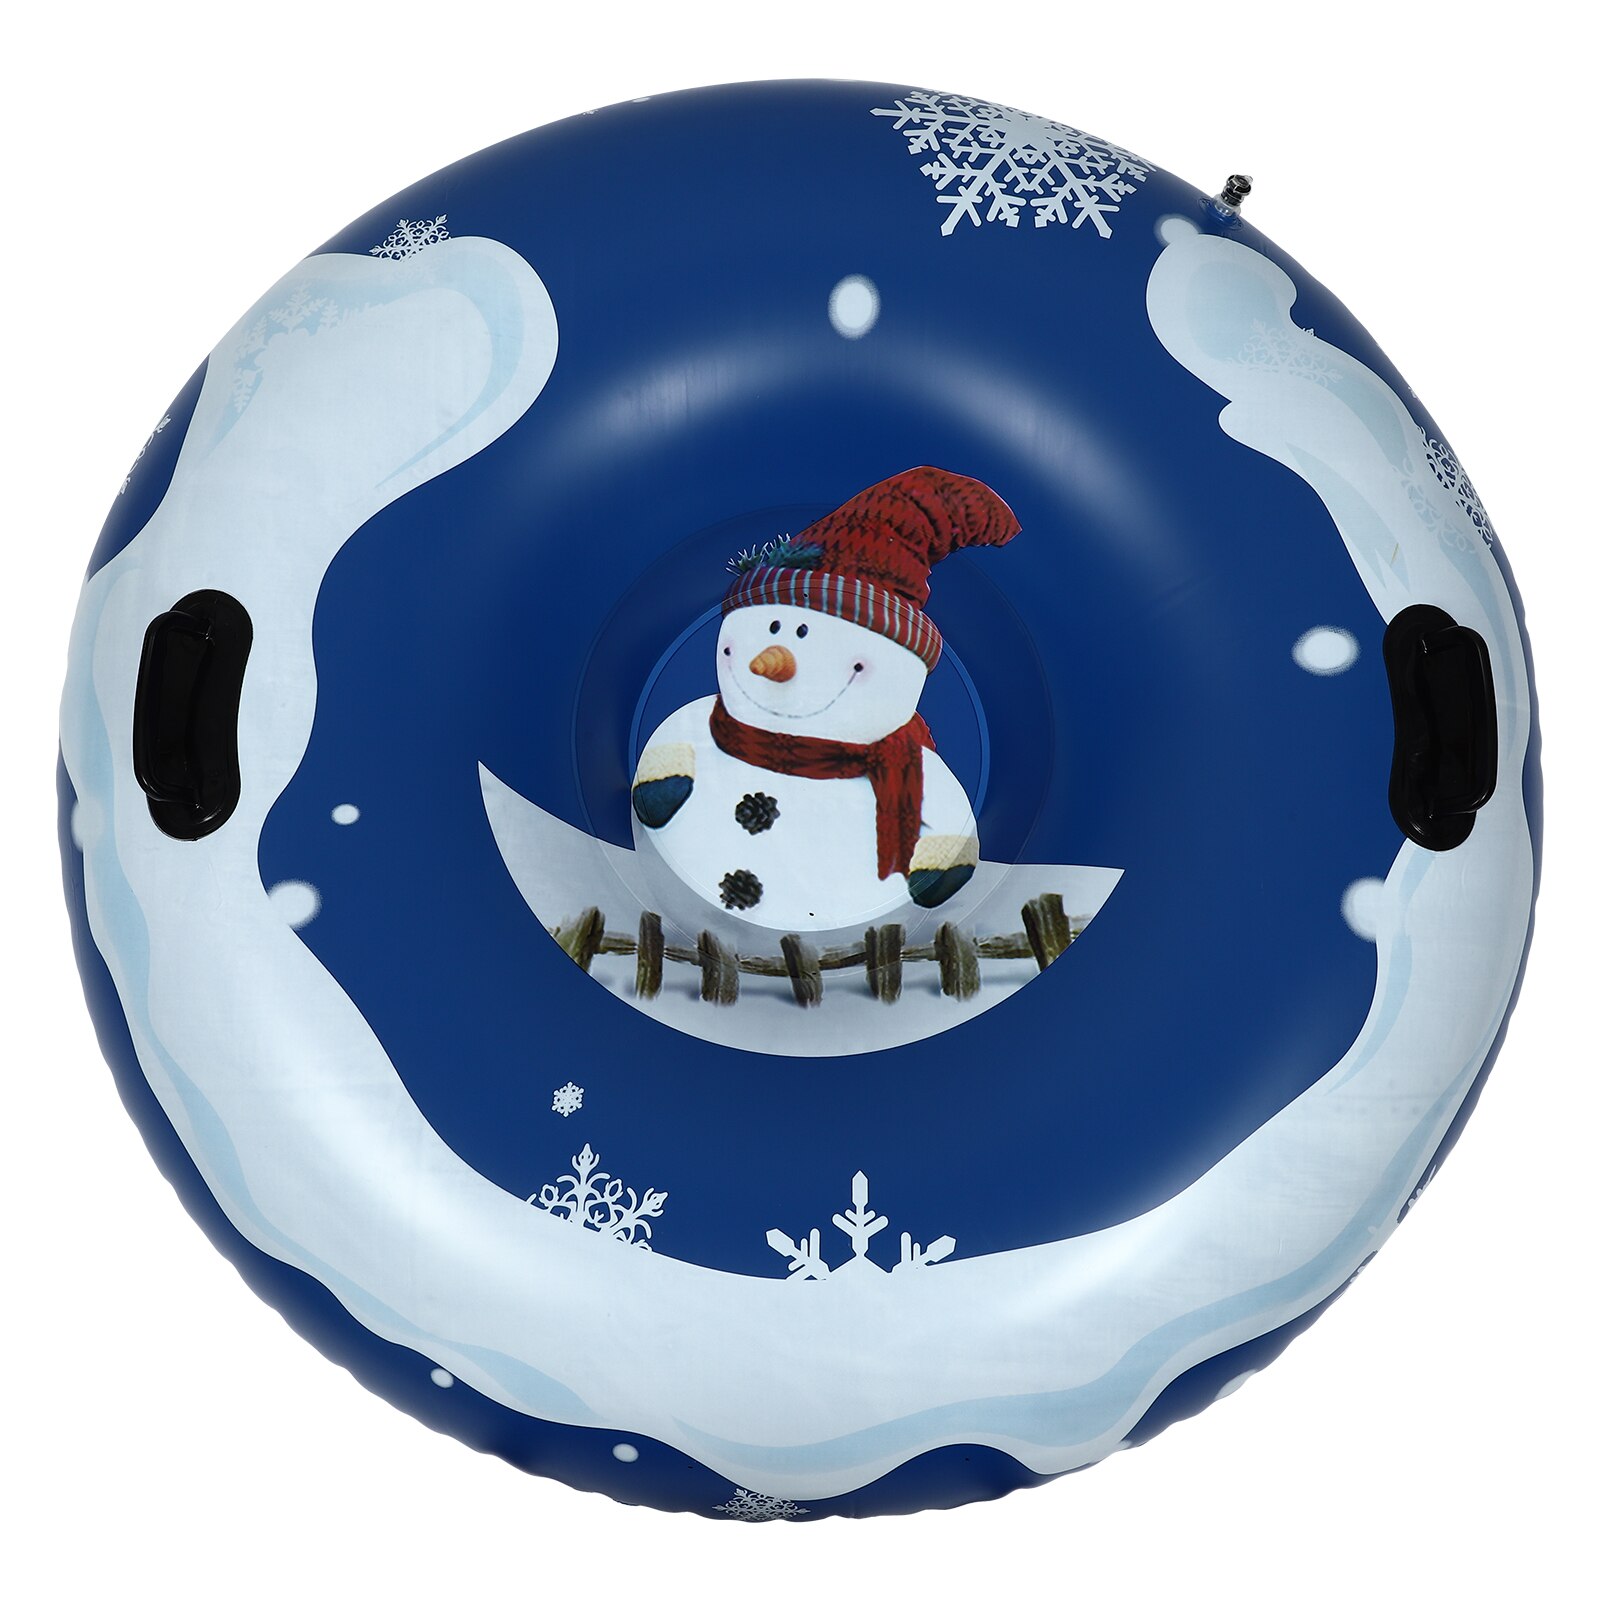 눈 썰매 튜브 풍선 어린이 스키 링 크리스마스 접시 무거운 겨울 핸들 크리스마스 인플레이션 썰매 튜브 듀티